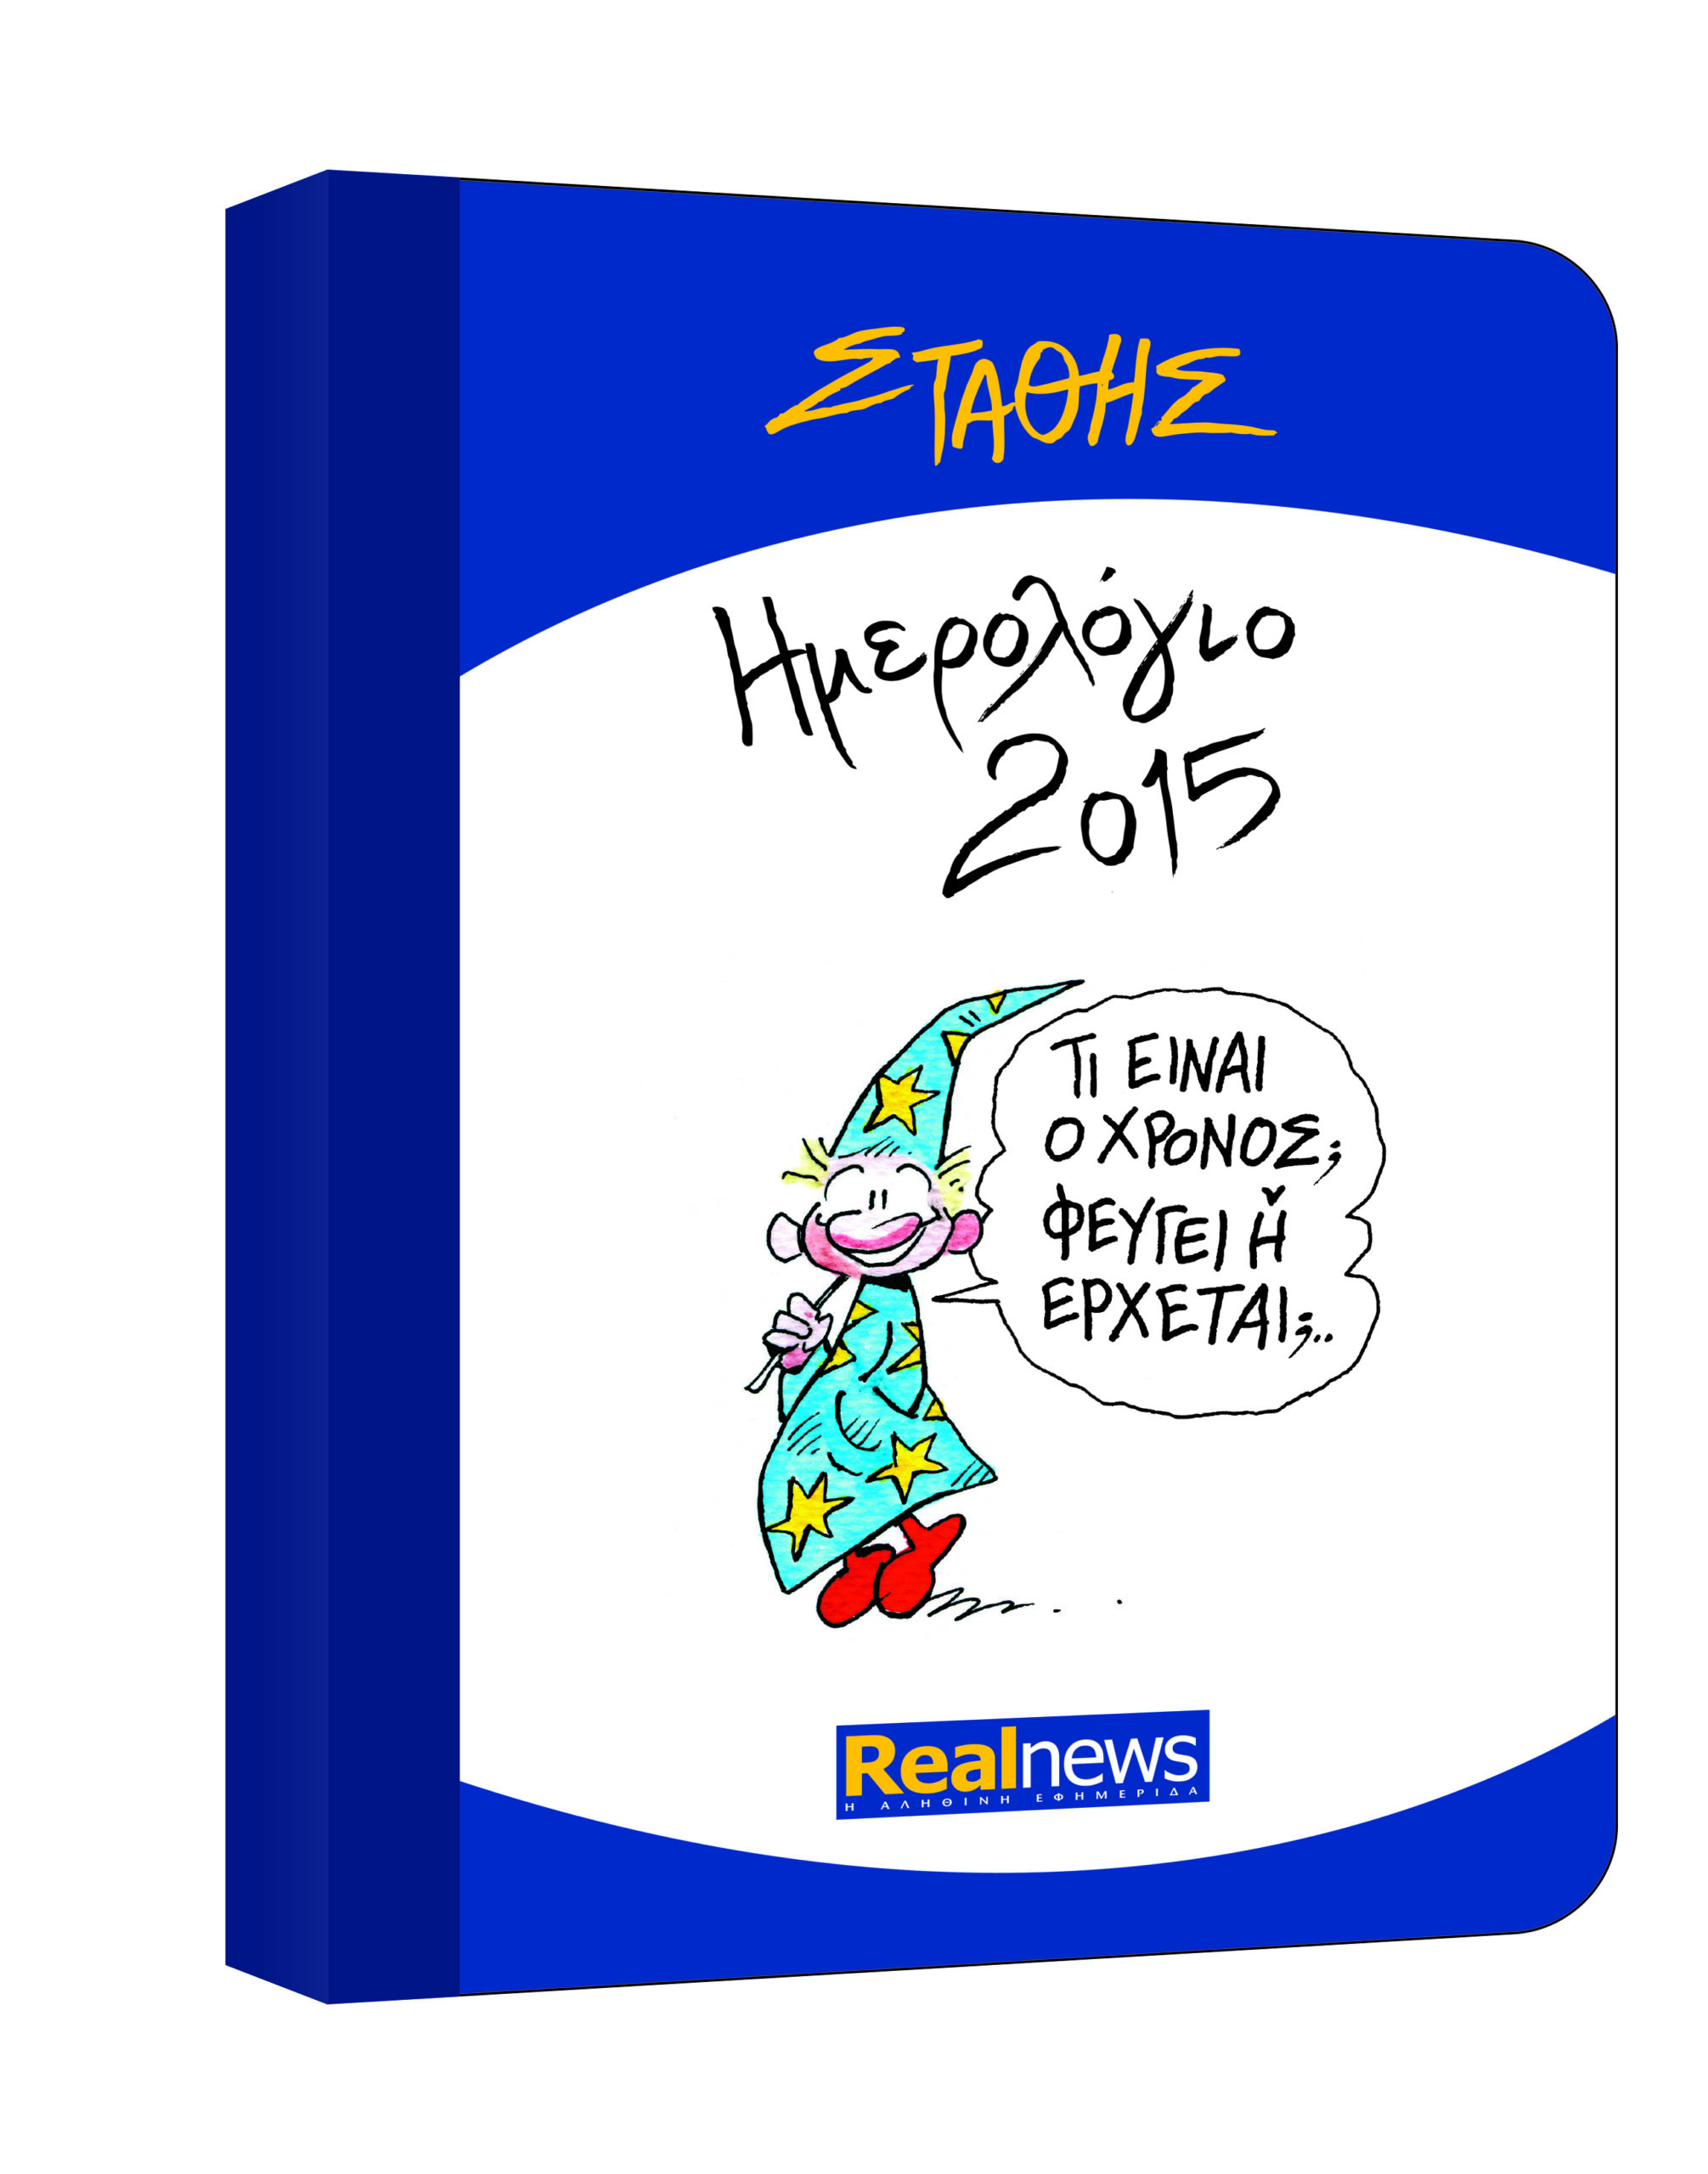 Το ημερολόγιο του 2015 με τα σκίτσα του Στάθη σε όλα τα περίπτερα